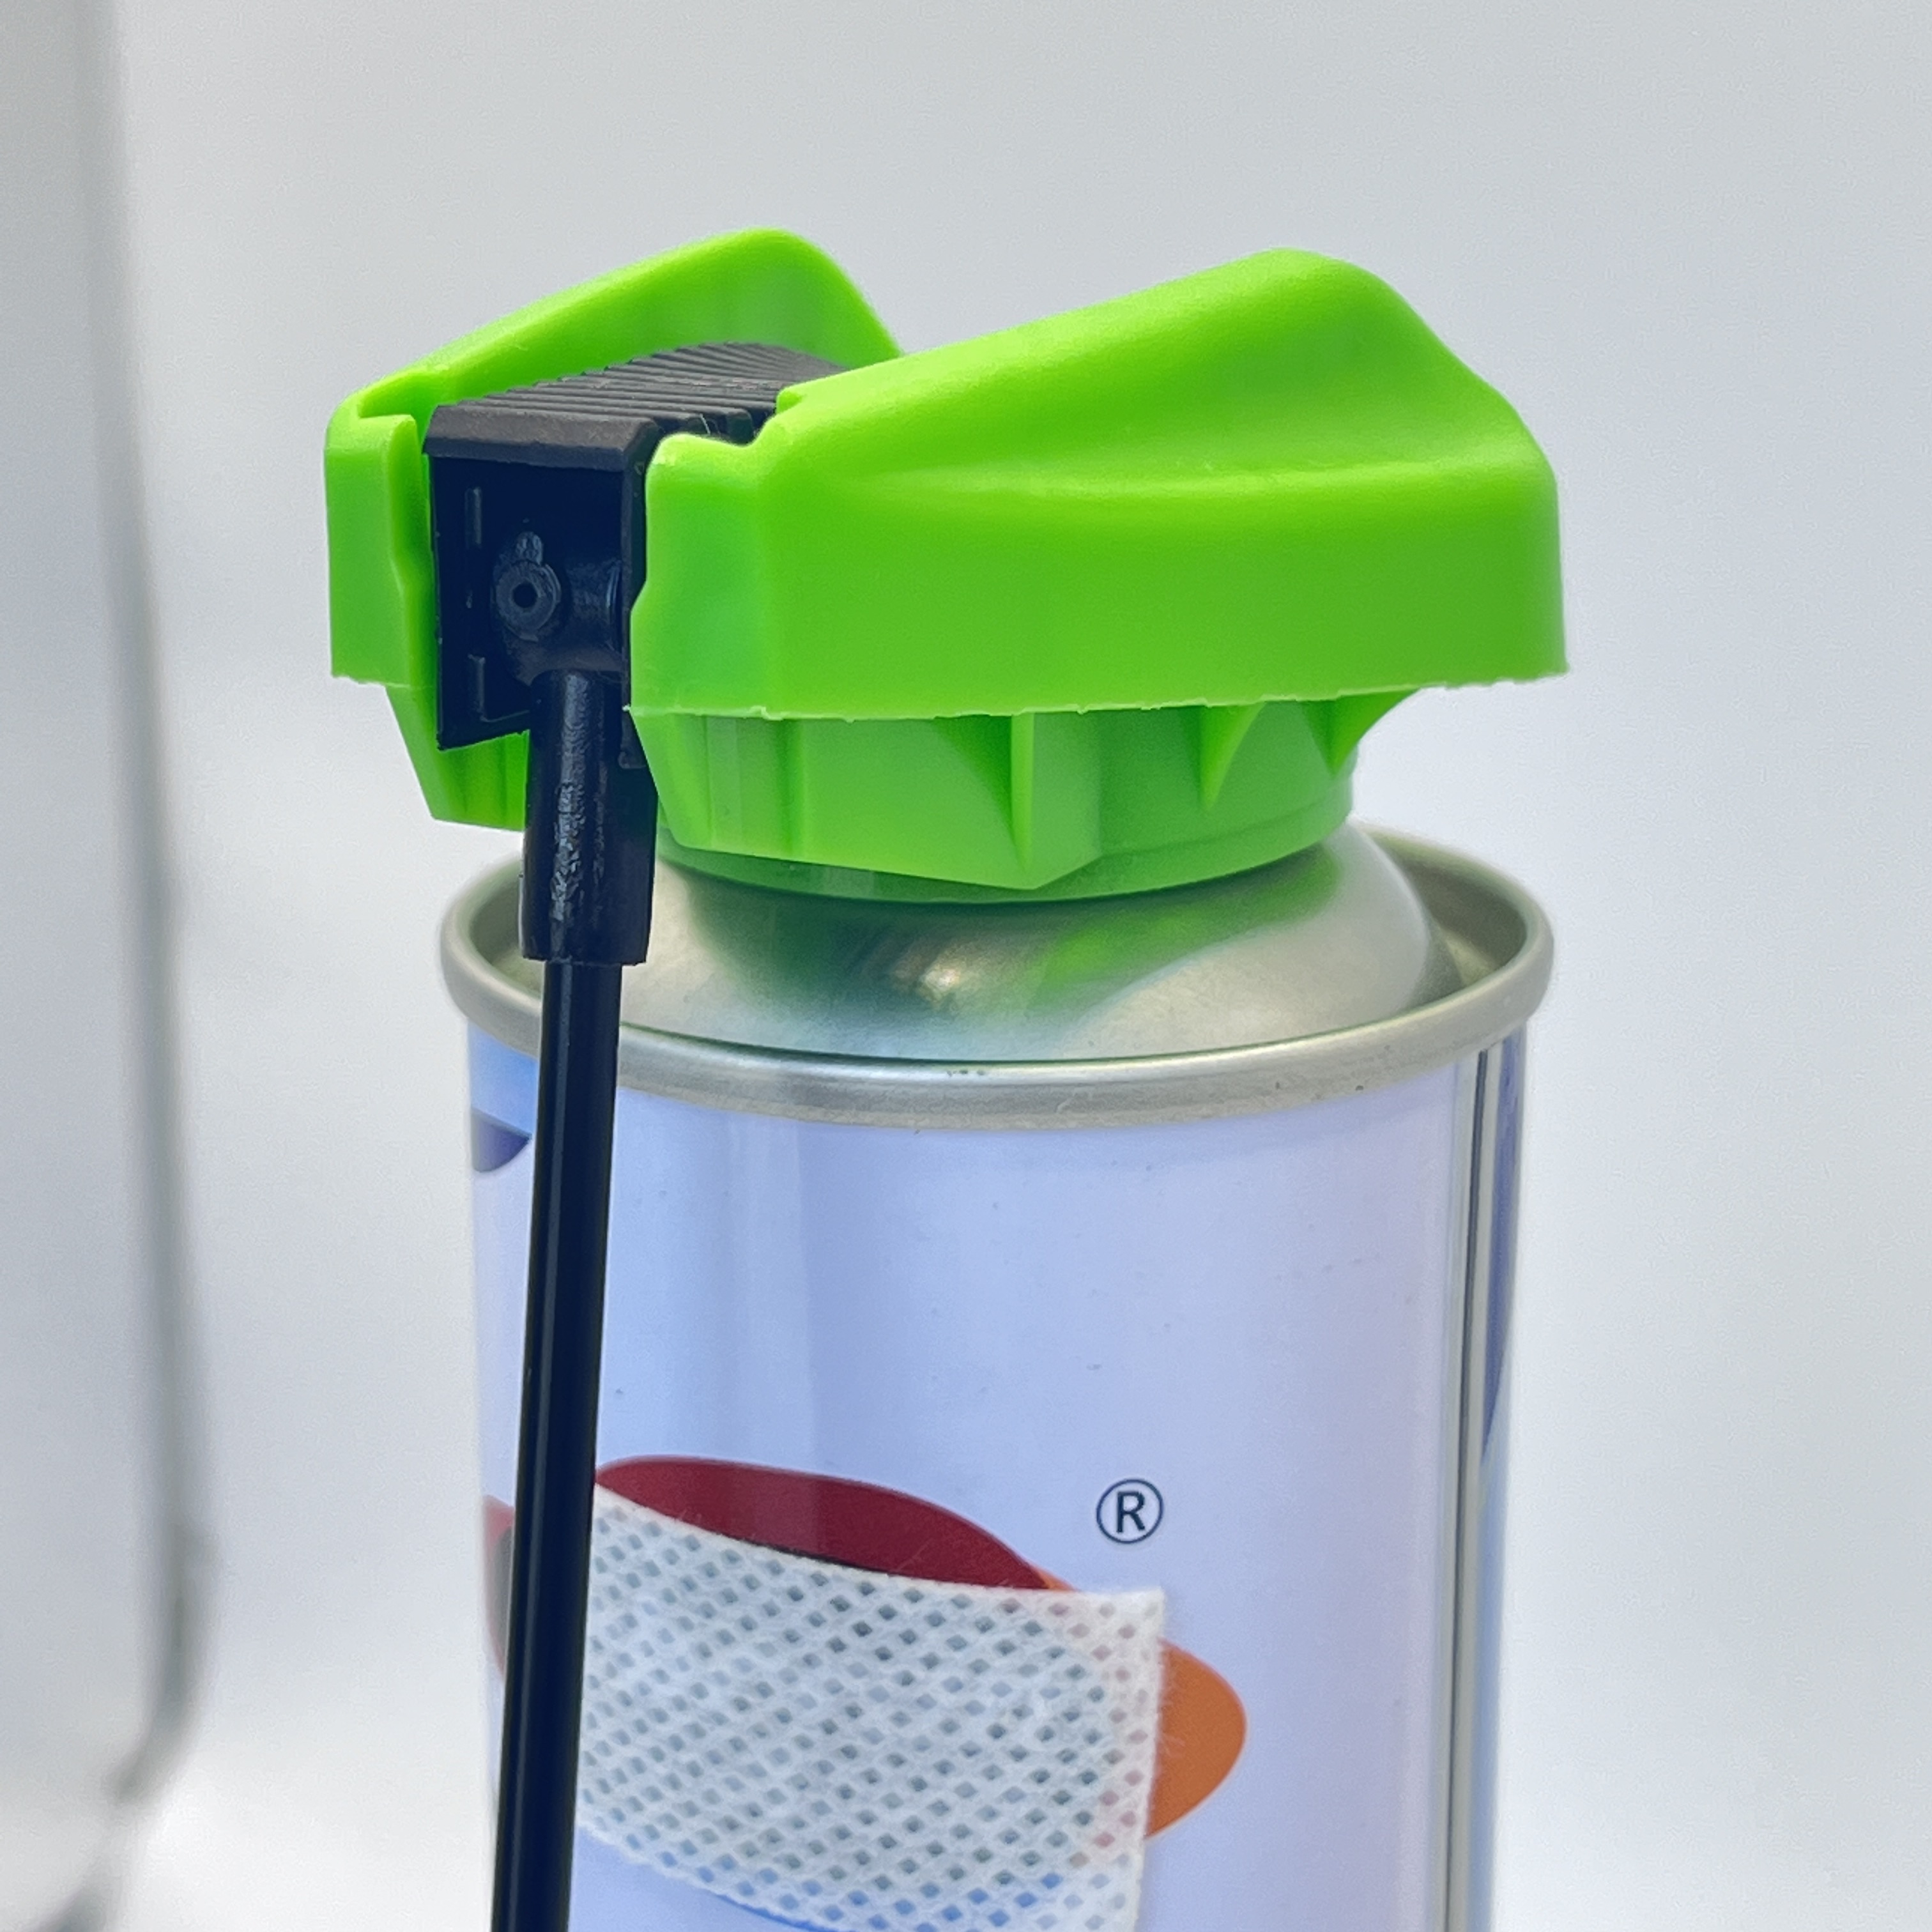 Sokoldalú kioldósapka csővel – kényelmes adagoló megoldás folyadékokhoz és vegyi anyagokhoz